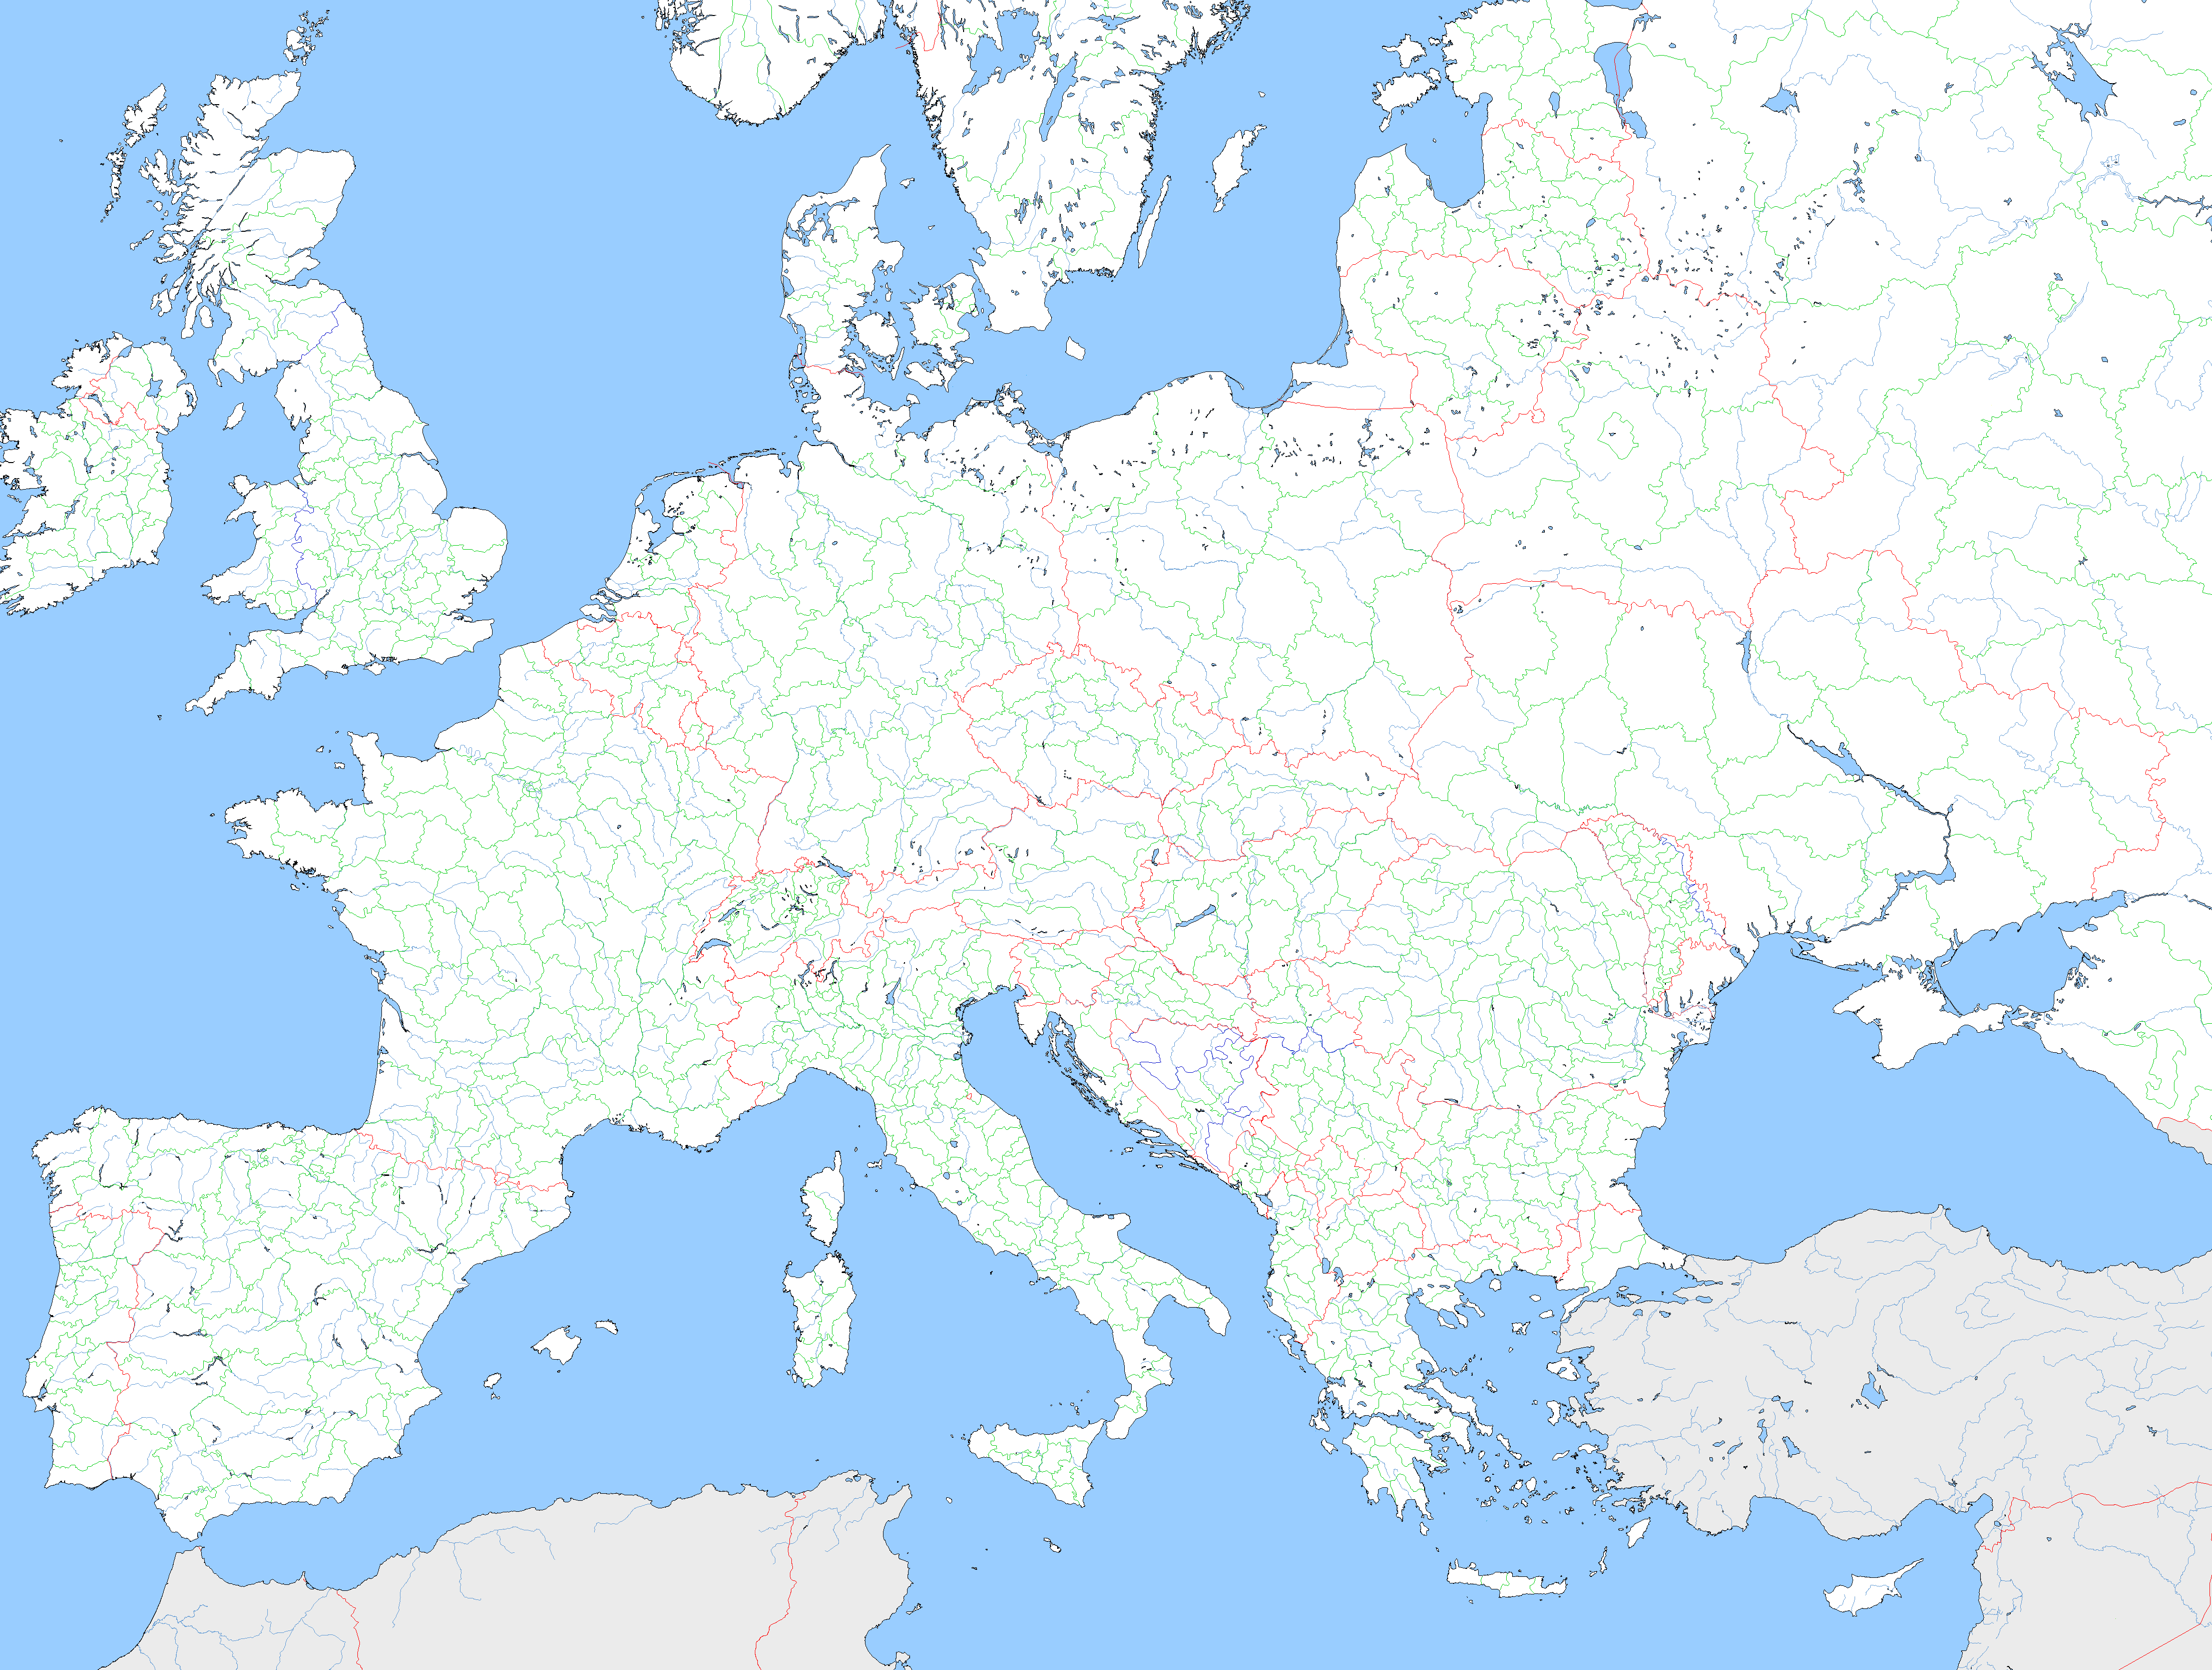 Large Map Europe | Casami - Large Map Of Europe Printable